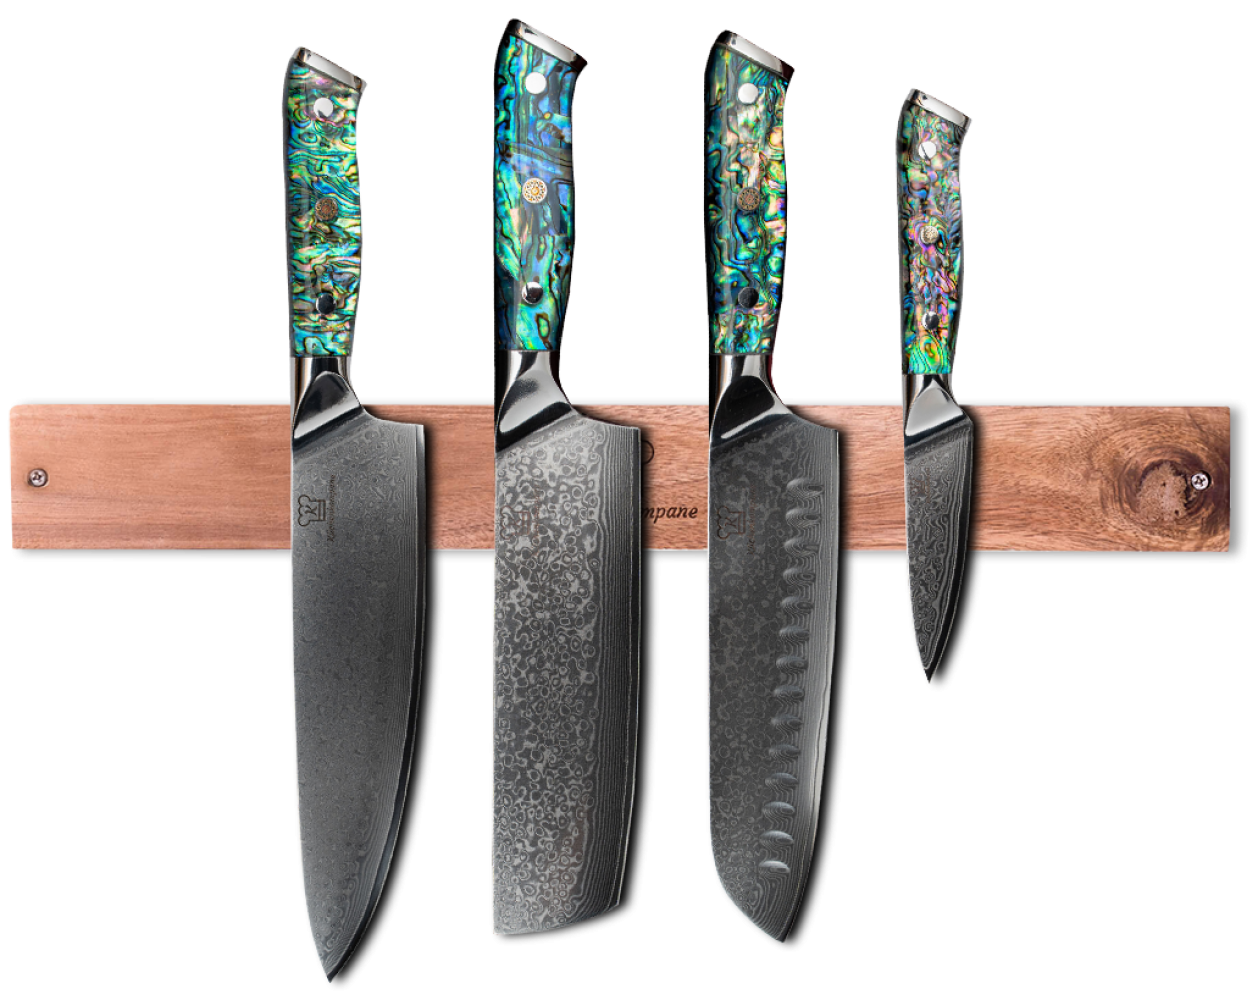 Sheru Damast Messerset mit magnetischer Holzleiste - 4 teiliges Messerset aus 67 lagigem Damast Stahl - Muschel & Epoxidharz Griff Bild 1